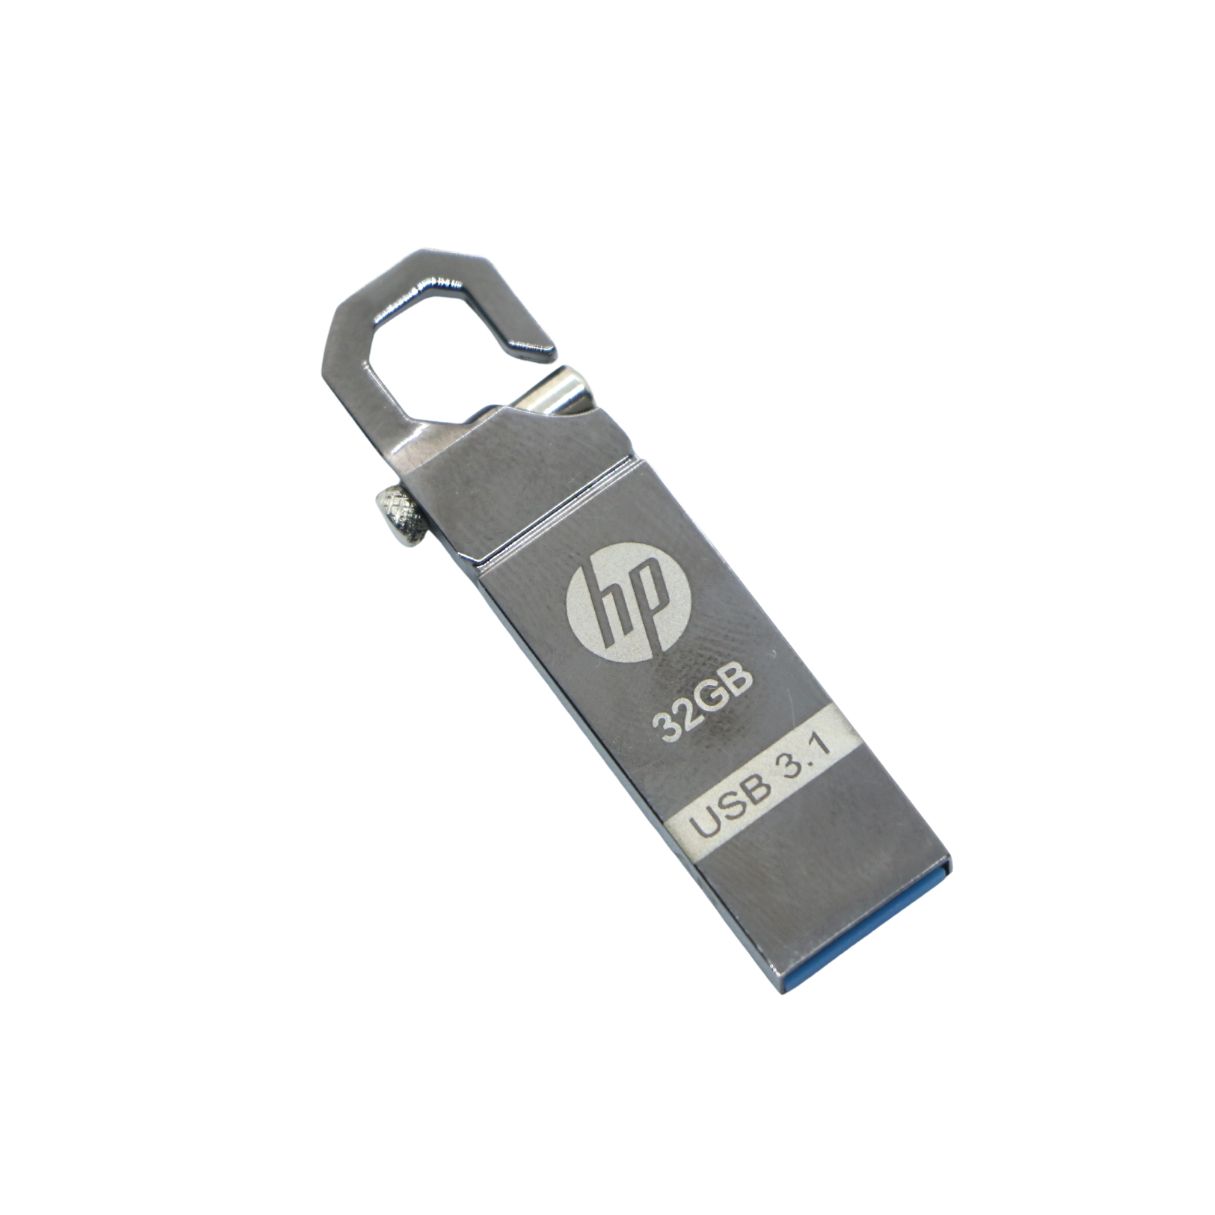 HP v250w 32 GB Pen Drive